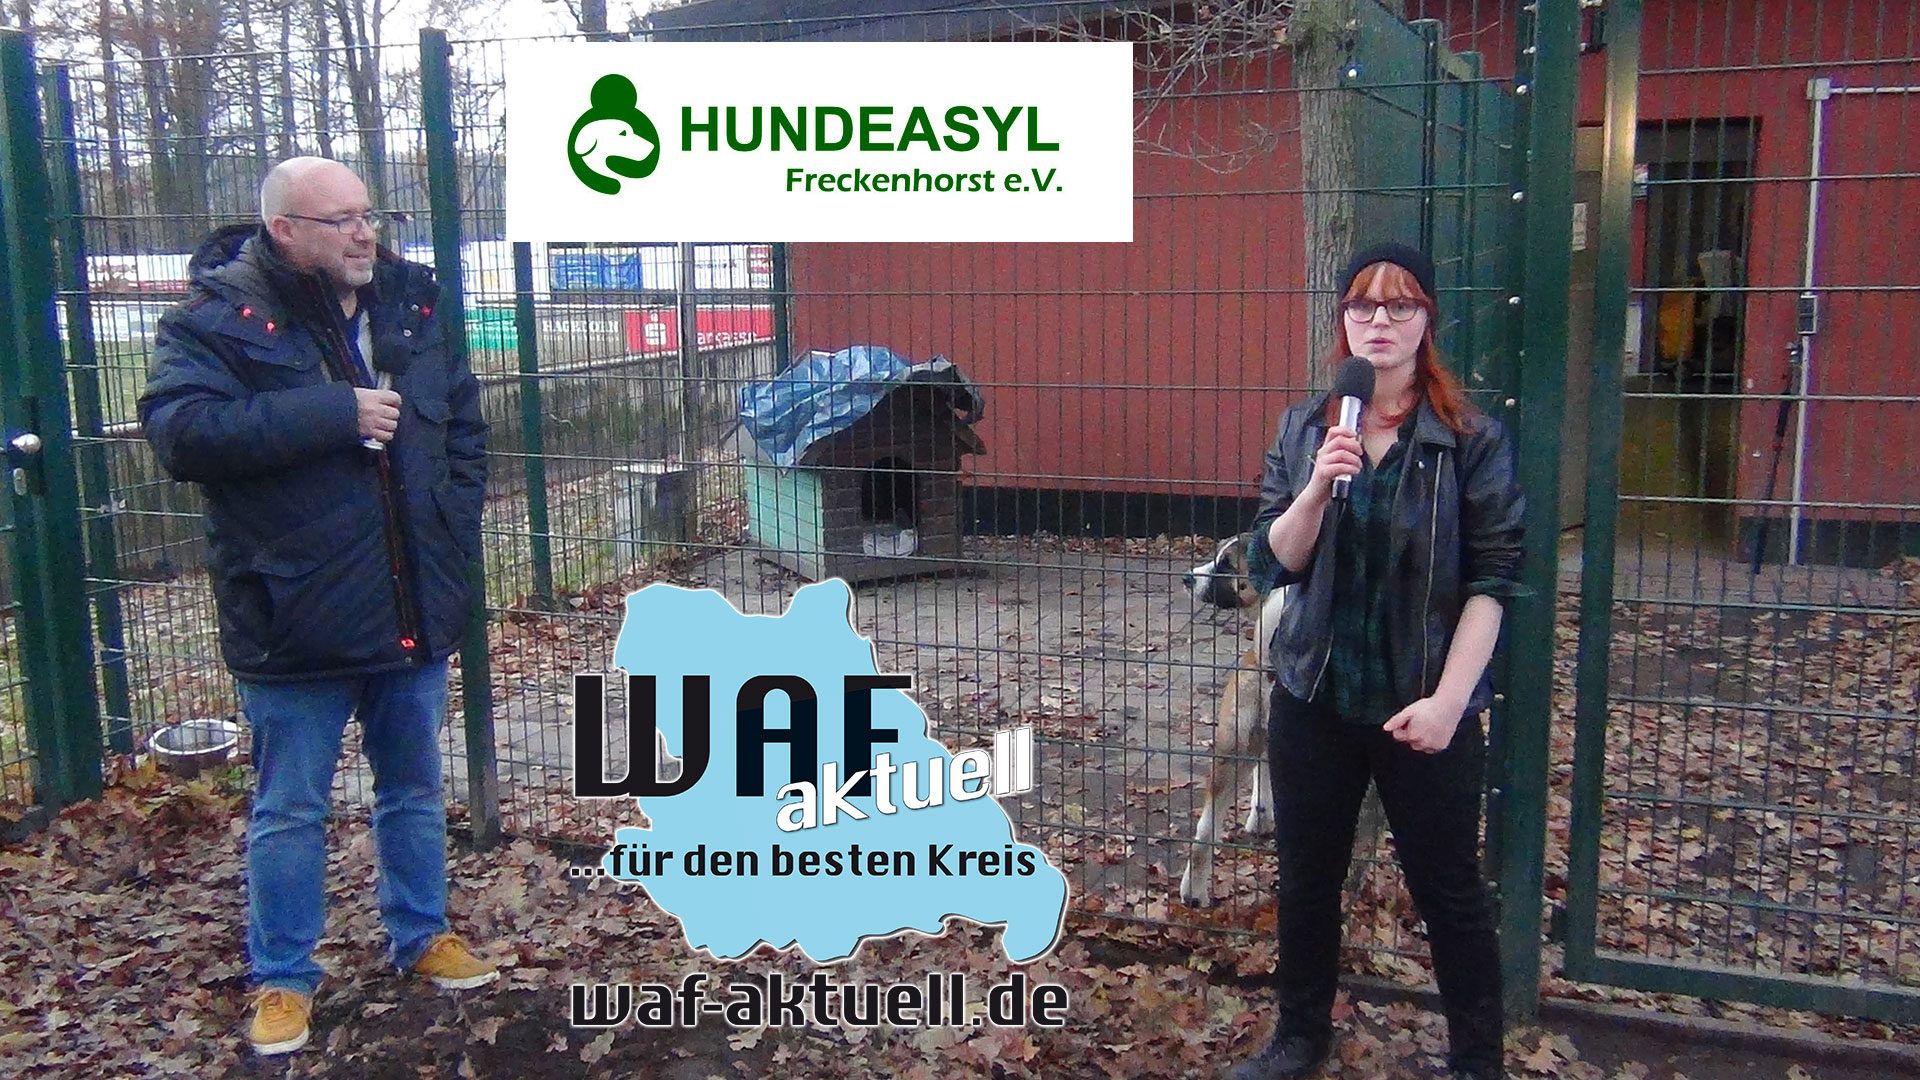 WAF-Aktuell.de …für den besten Kreis, besuchte das Hundeasyl in Freckenhorst. MIT VIDEOBEITRAG